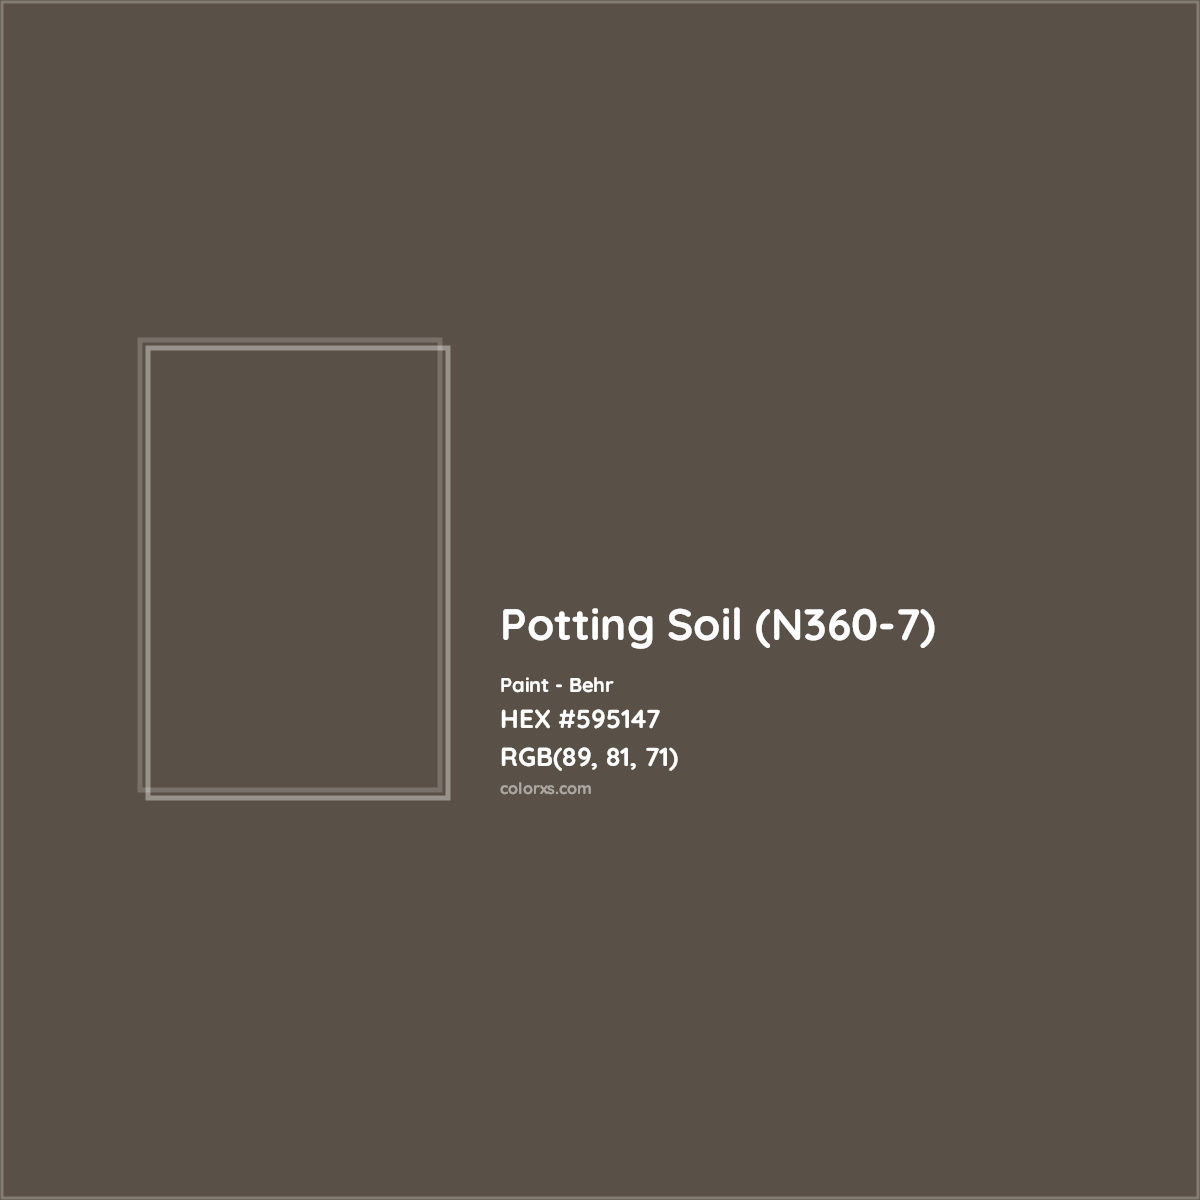 HEX #595147 Potting Soil (N360-7) Paint Behr - Color Code